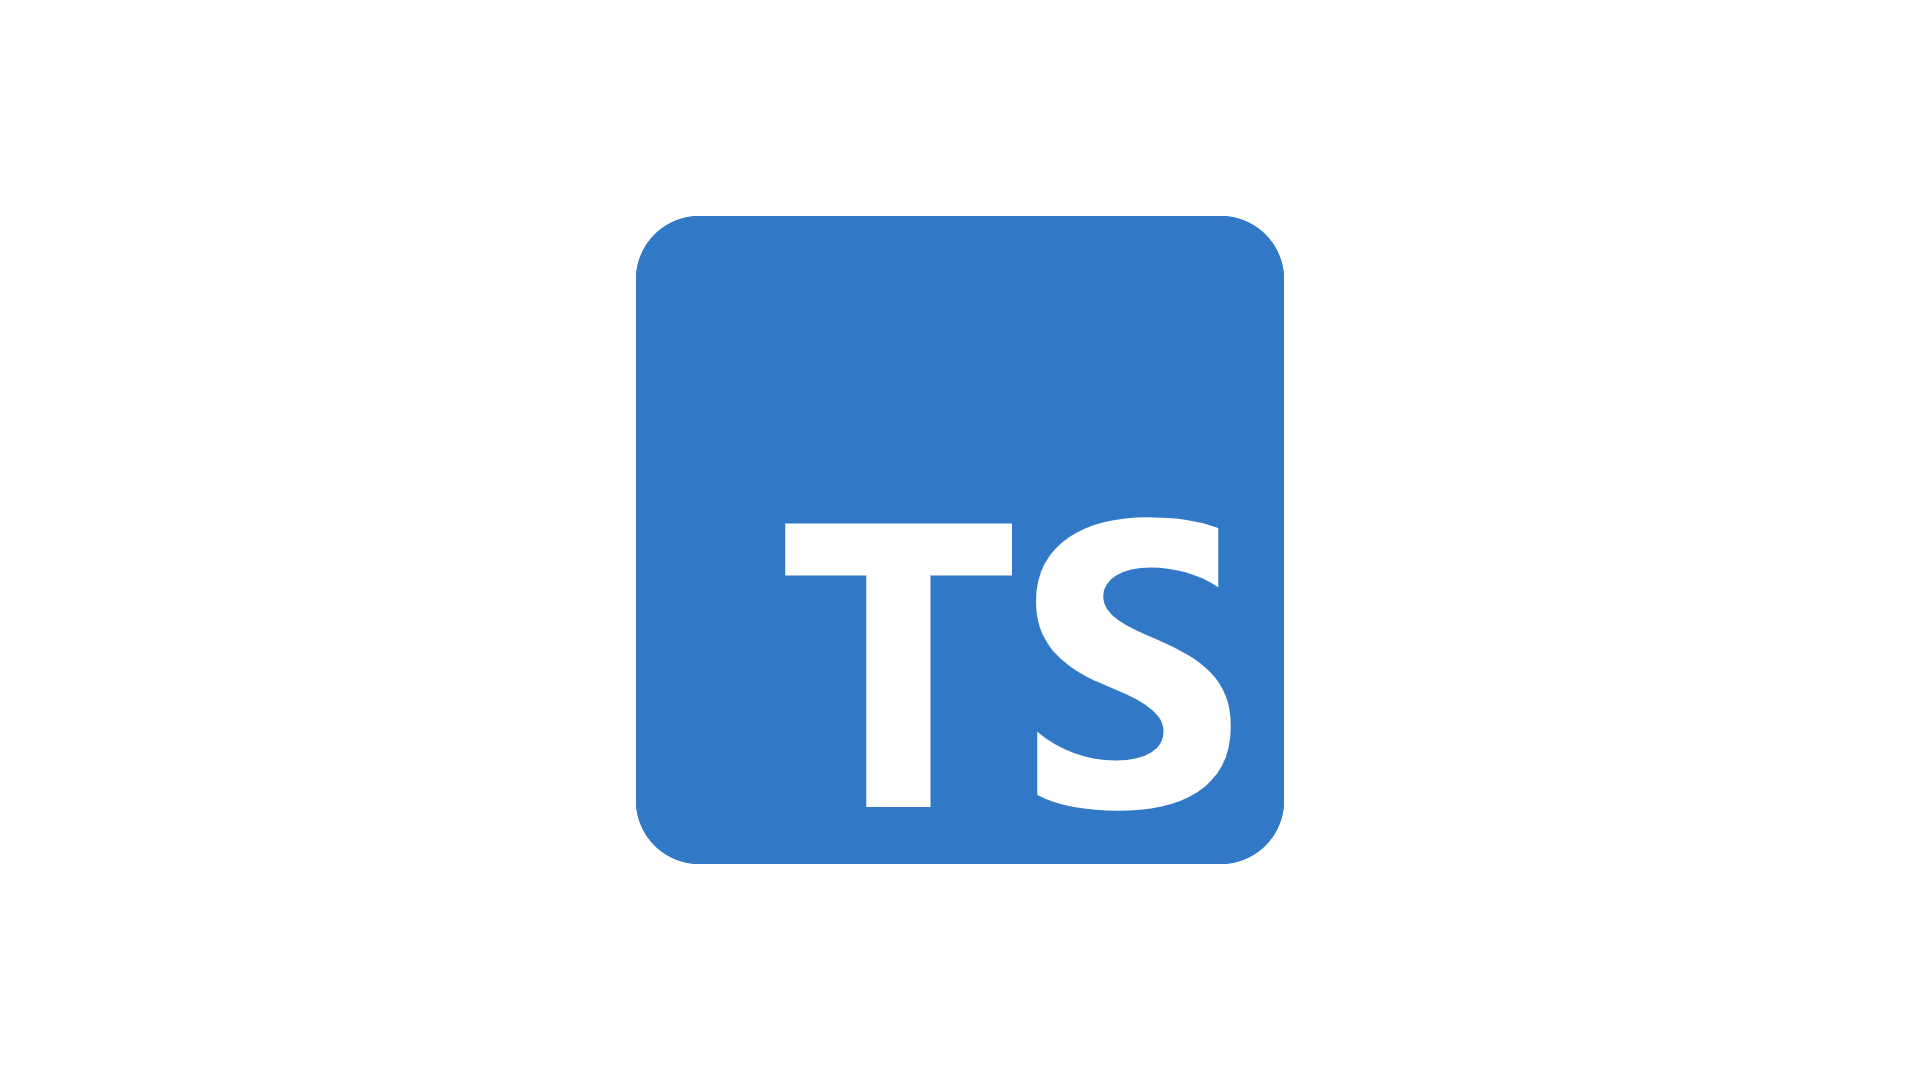 Тайп скрипт. TYPESCRIPT логотип. TYPESCRIPT логотип без фона. TYPESCRIPT язык программирования.